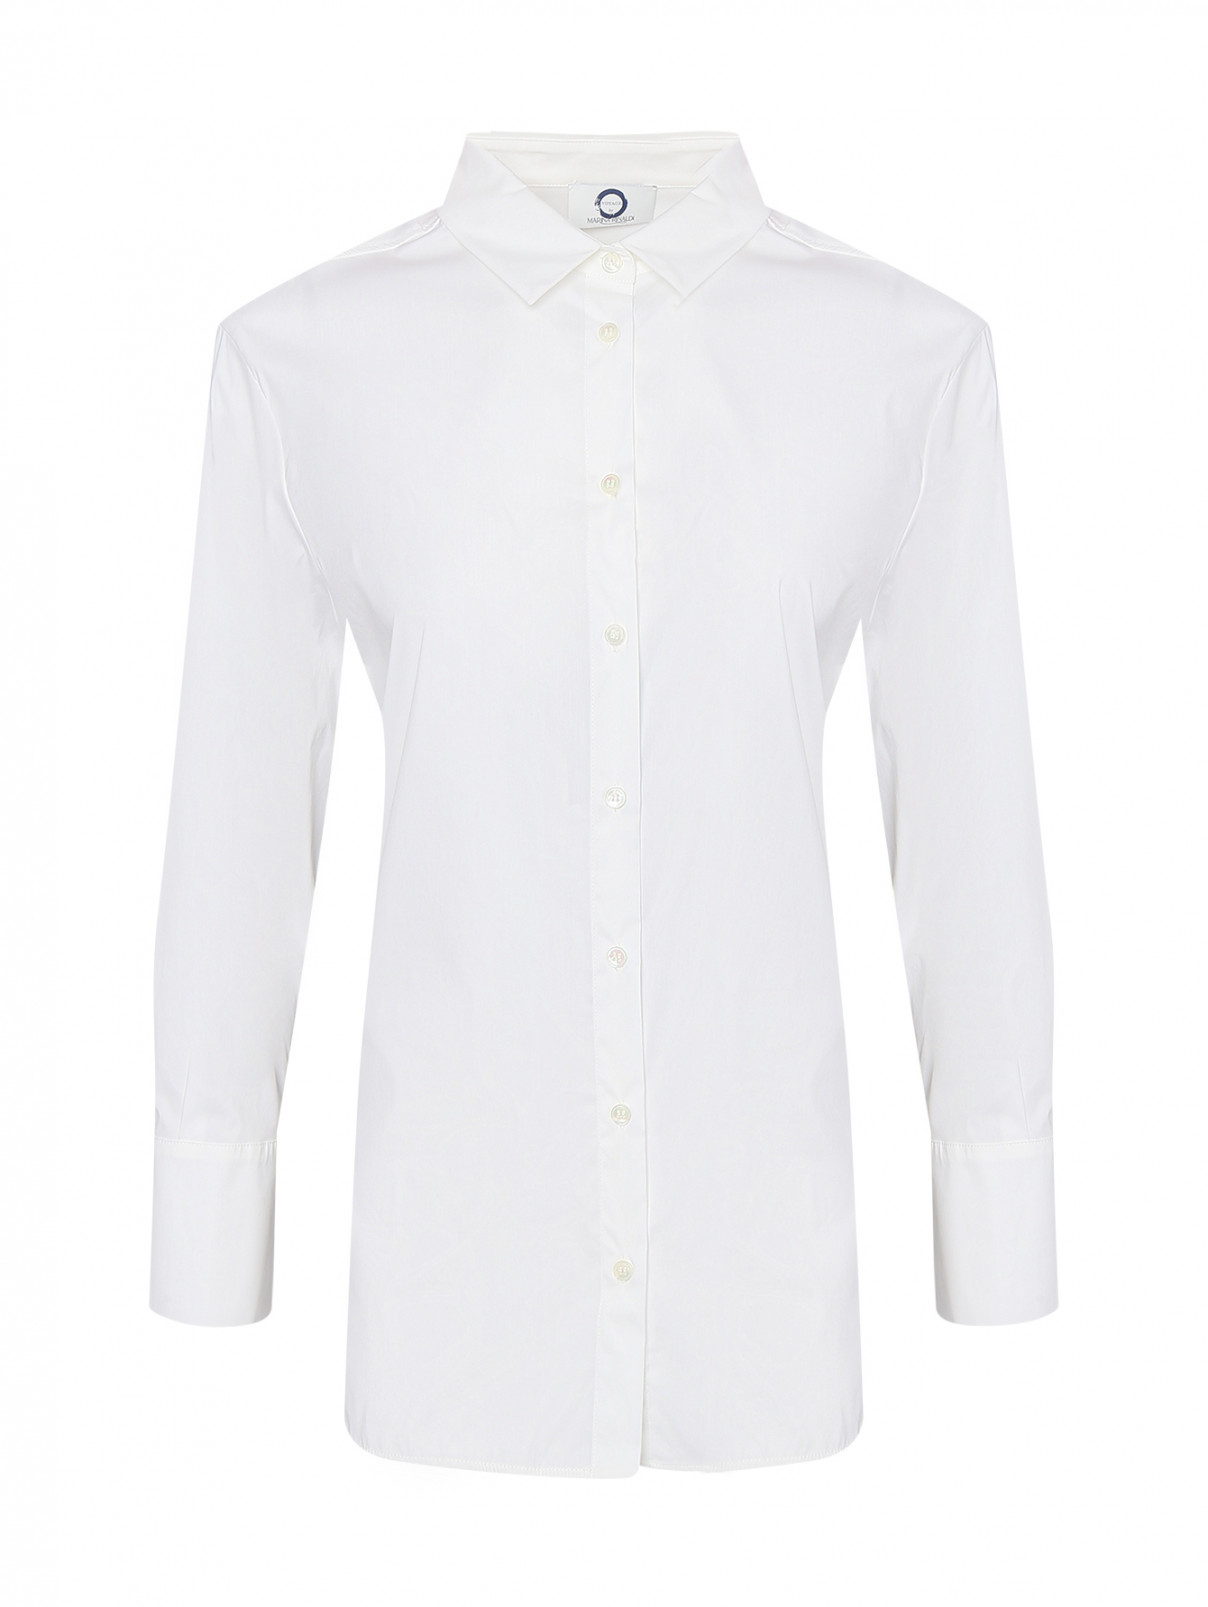 Однотонная рубашка из смешанного хлопка Marina Rinaldi  –  Общий вид  – Цвет:  Белый